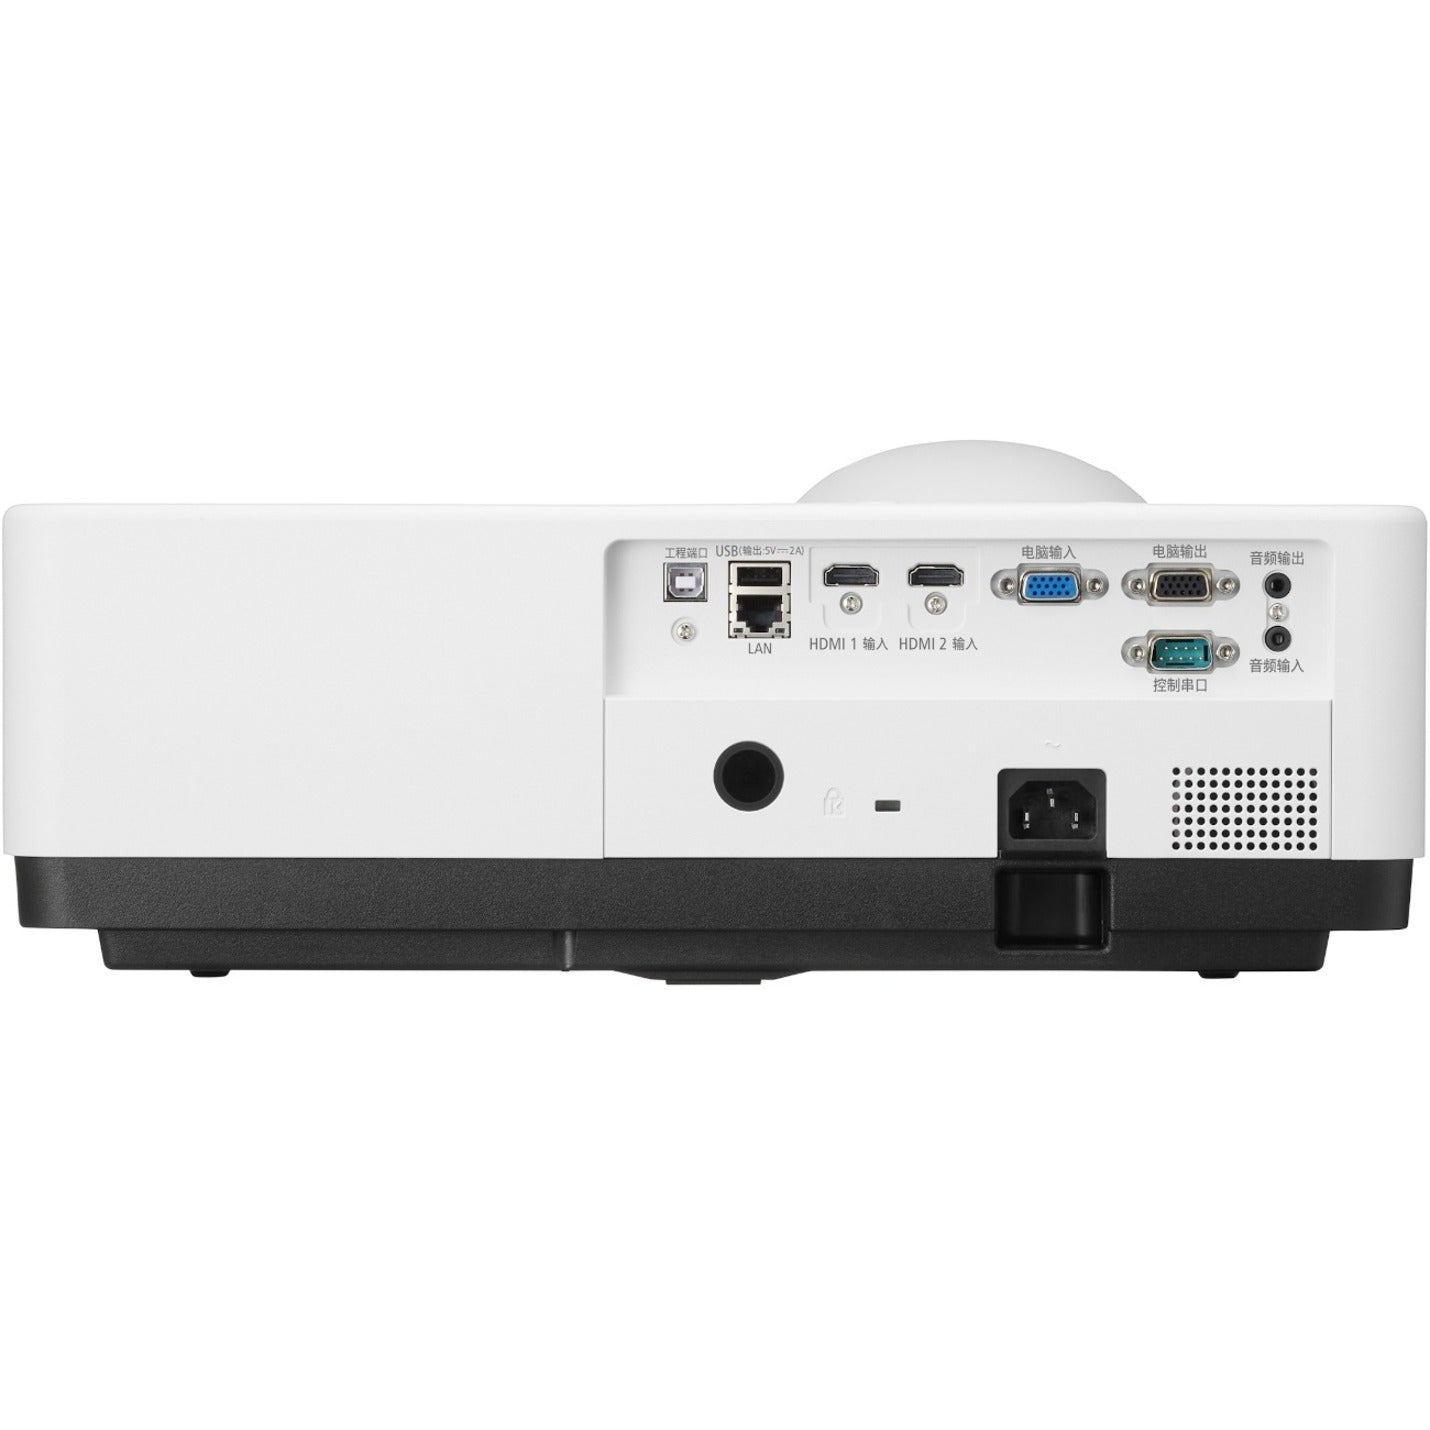 샤프 NEC 디스플레이 NP-PE456USL 엔트리 설치 쇼트 스로 LCD 프로젝터 4500 루멘 WUXGA 레이저